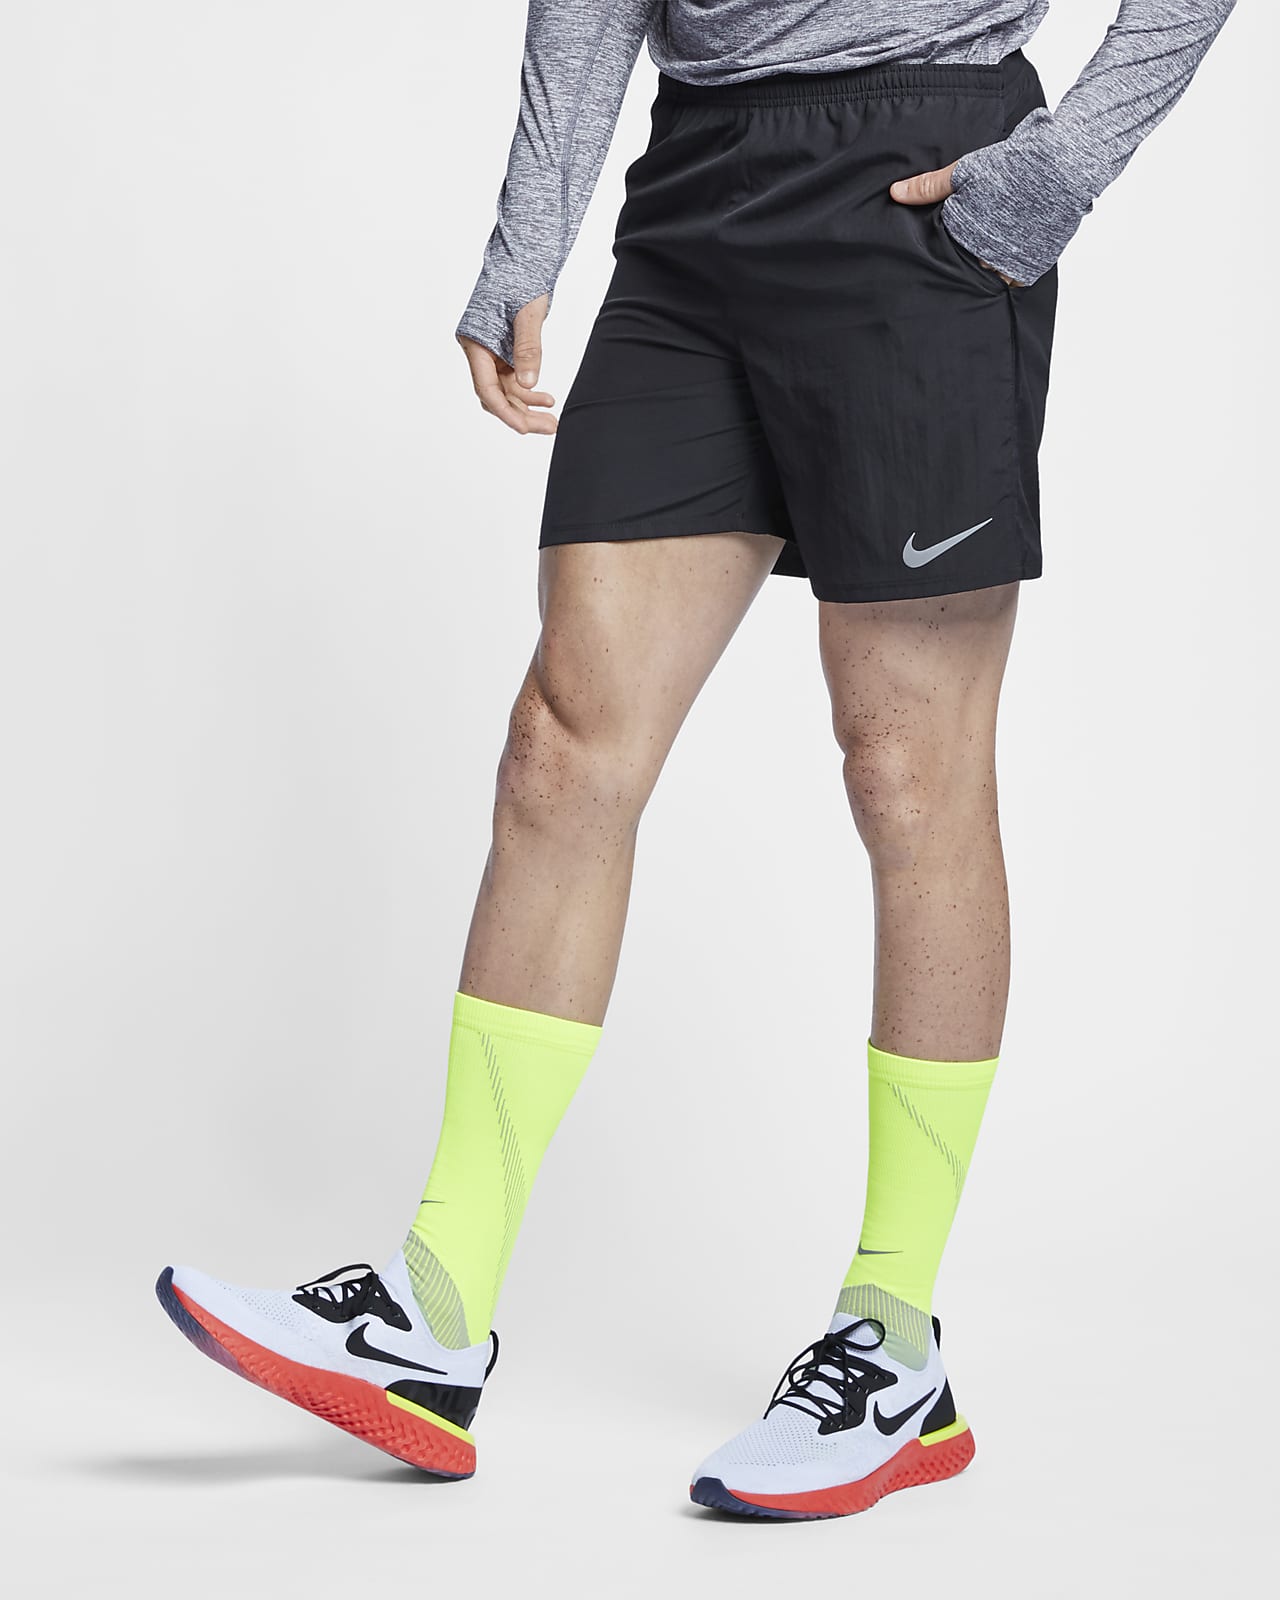 Nike Men's Running Shorts. Nike AT